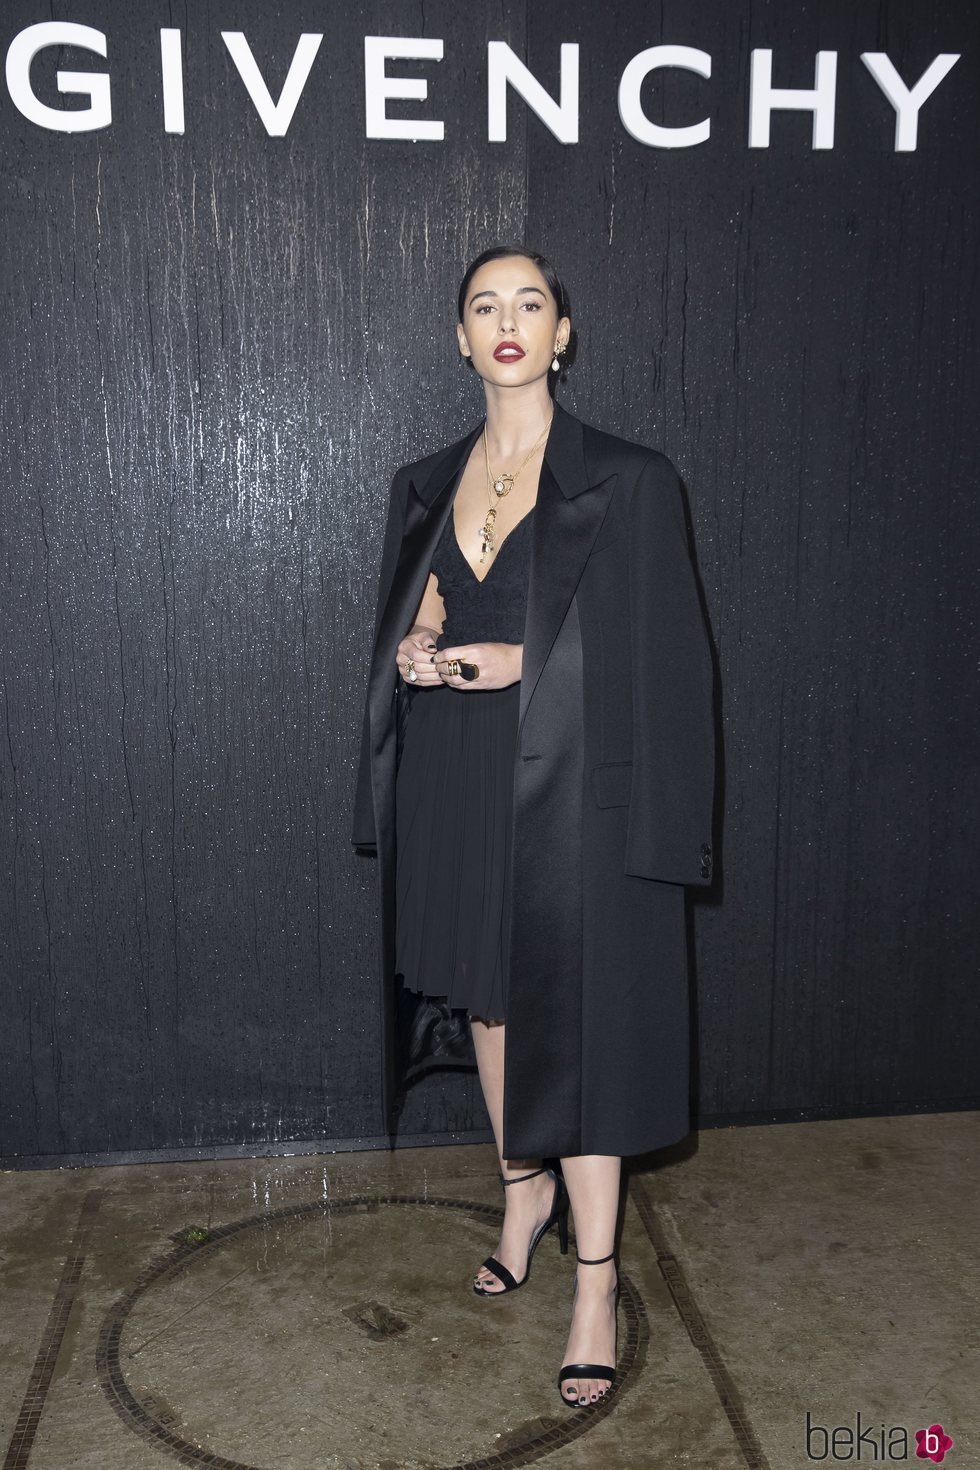 Naomi Scott vestida con la colección otoño/ invierno 2020-2021 de Givenchy